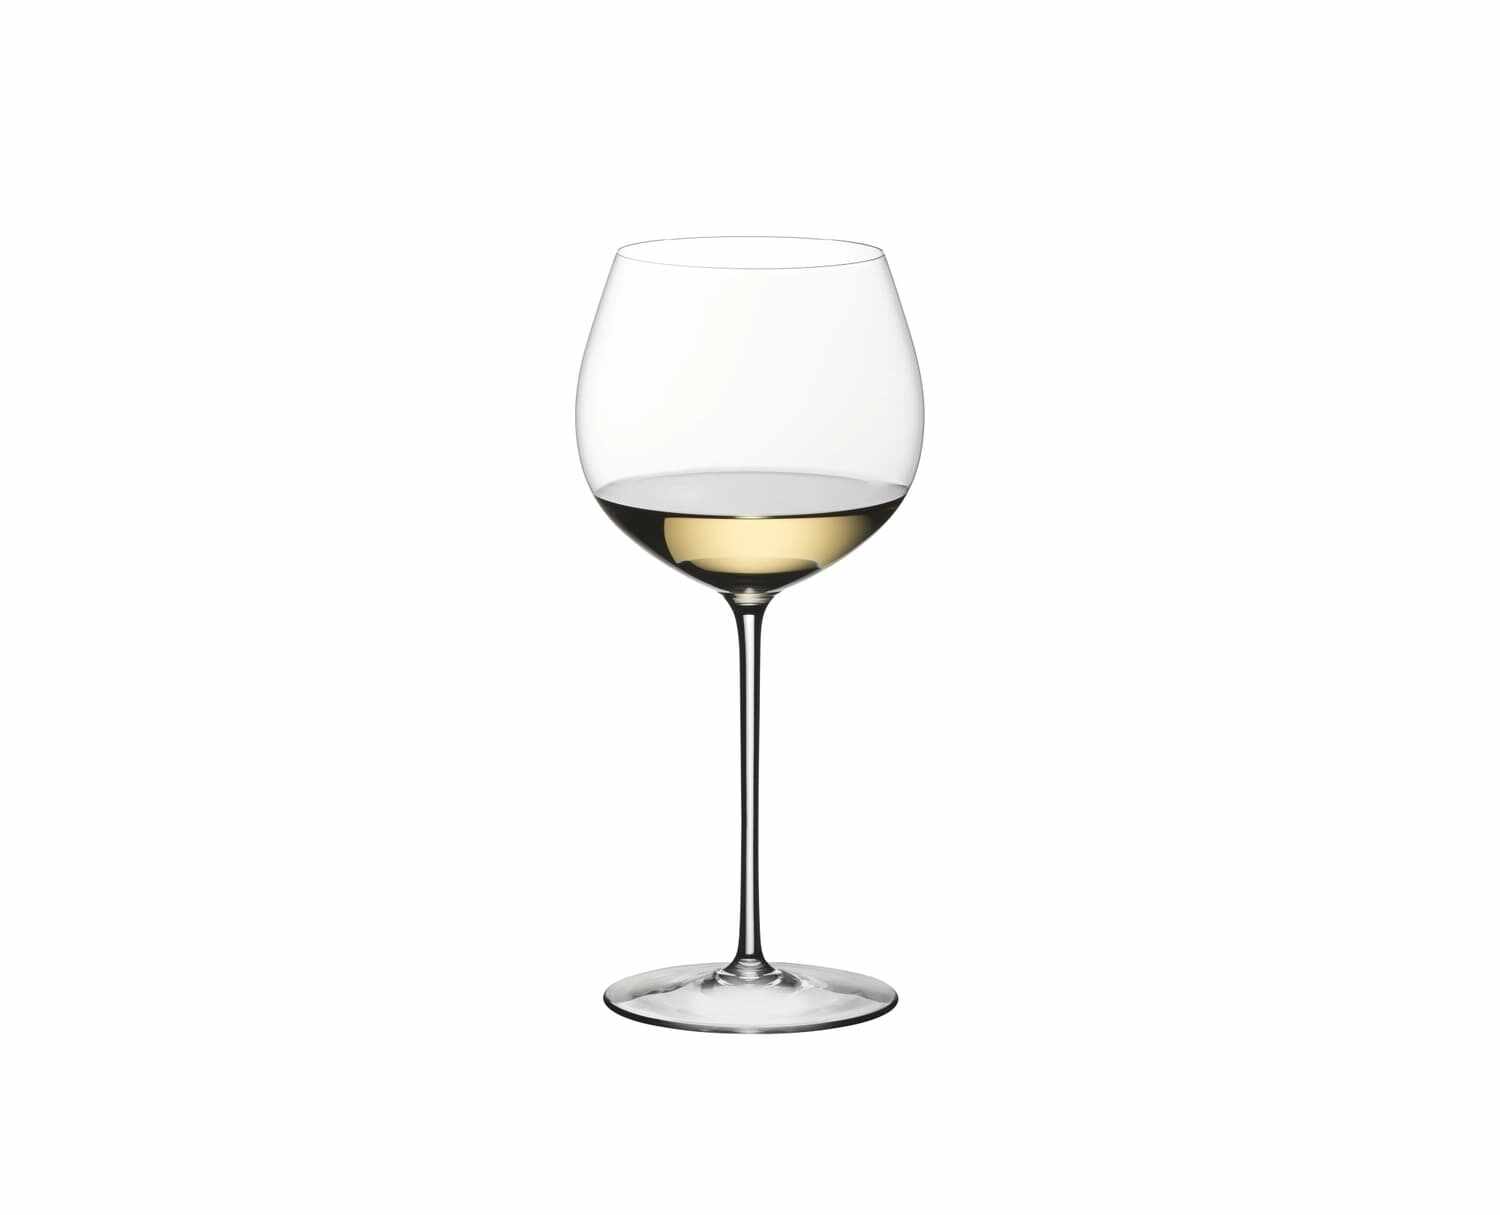 Pahar pentru vin, din cristal Superleggero Oaked Chardonnay Clear, 765 ml, Riedel